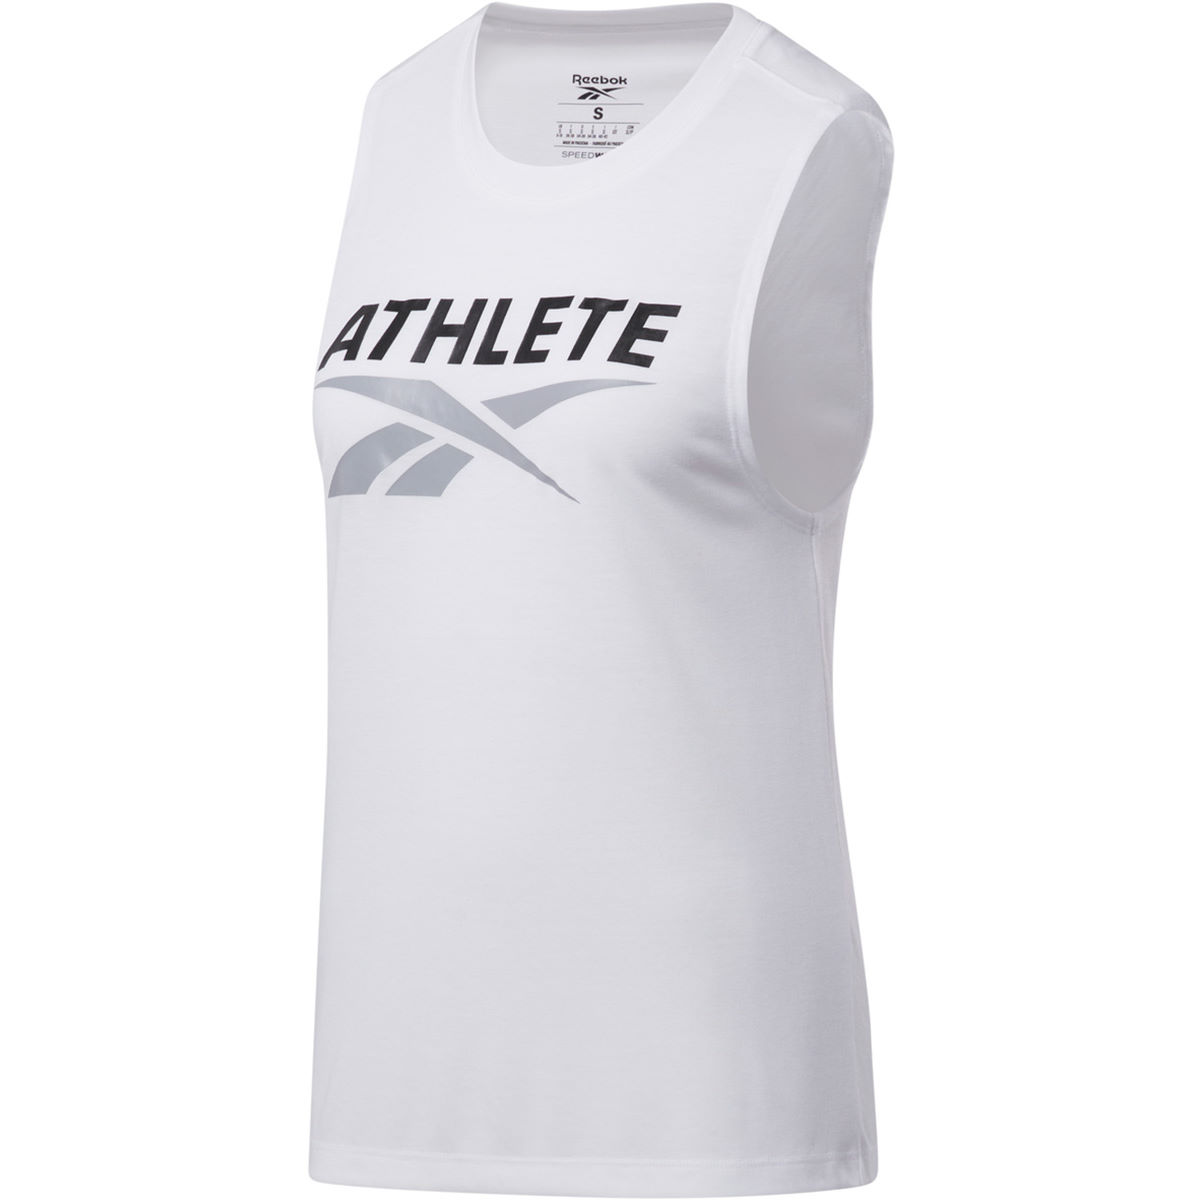 Camiseta de tirantes Reebok Reebok Athlete para mujer - Camisetas de entrenamiento